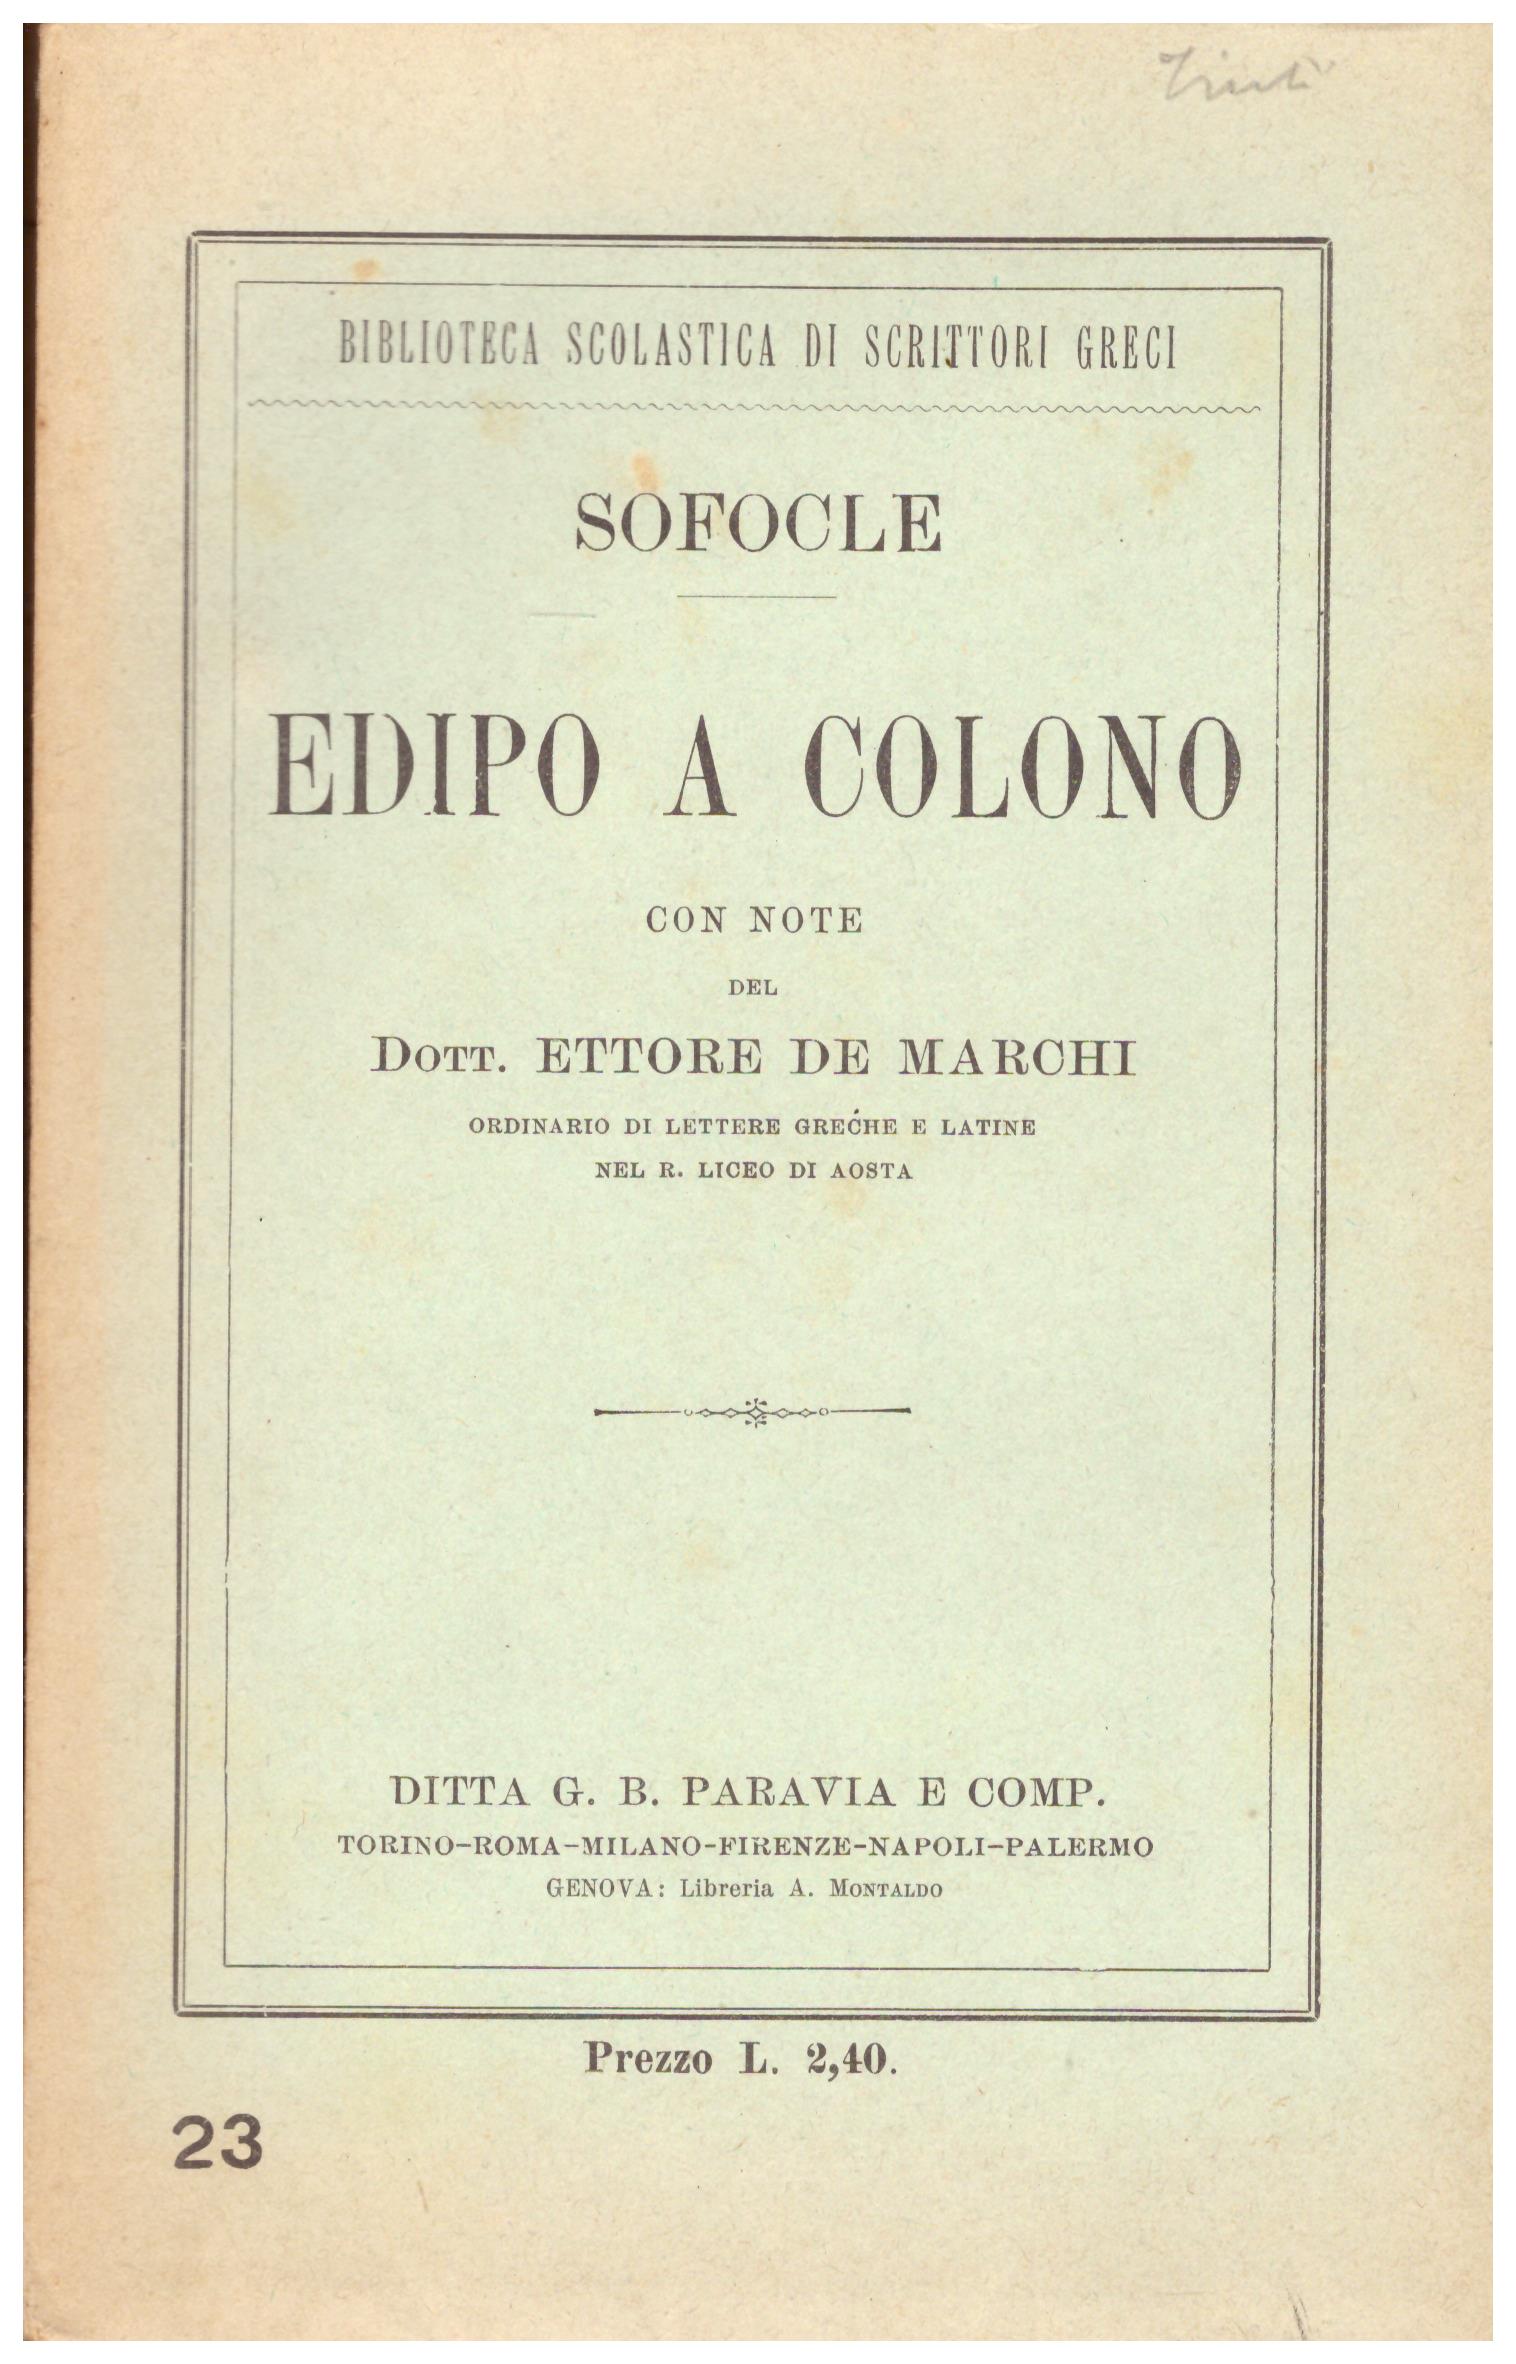 Titolo:  Edipo a Colono    Autore: Sofocle    Editore: Ditta G. B. Paravia e Comp.